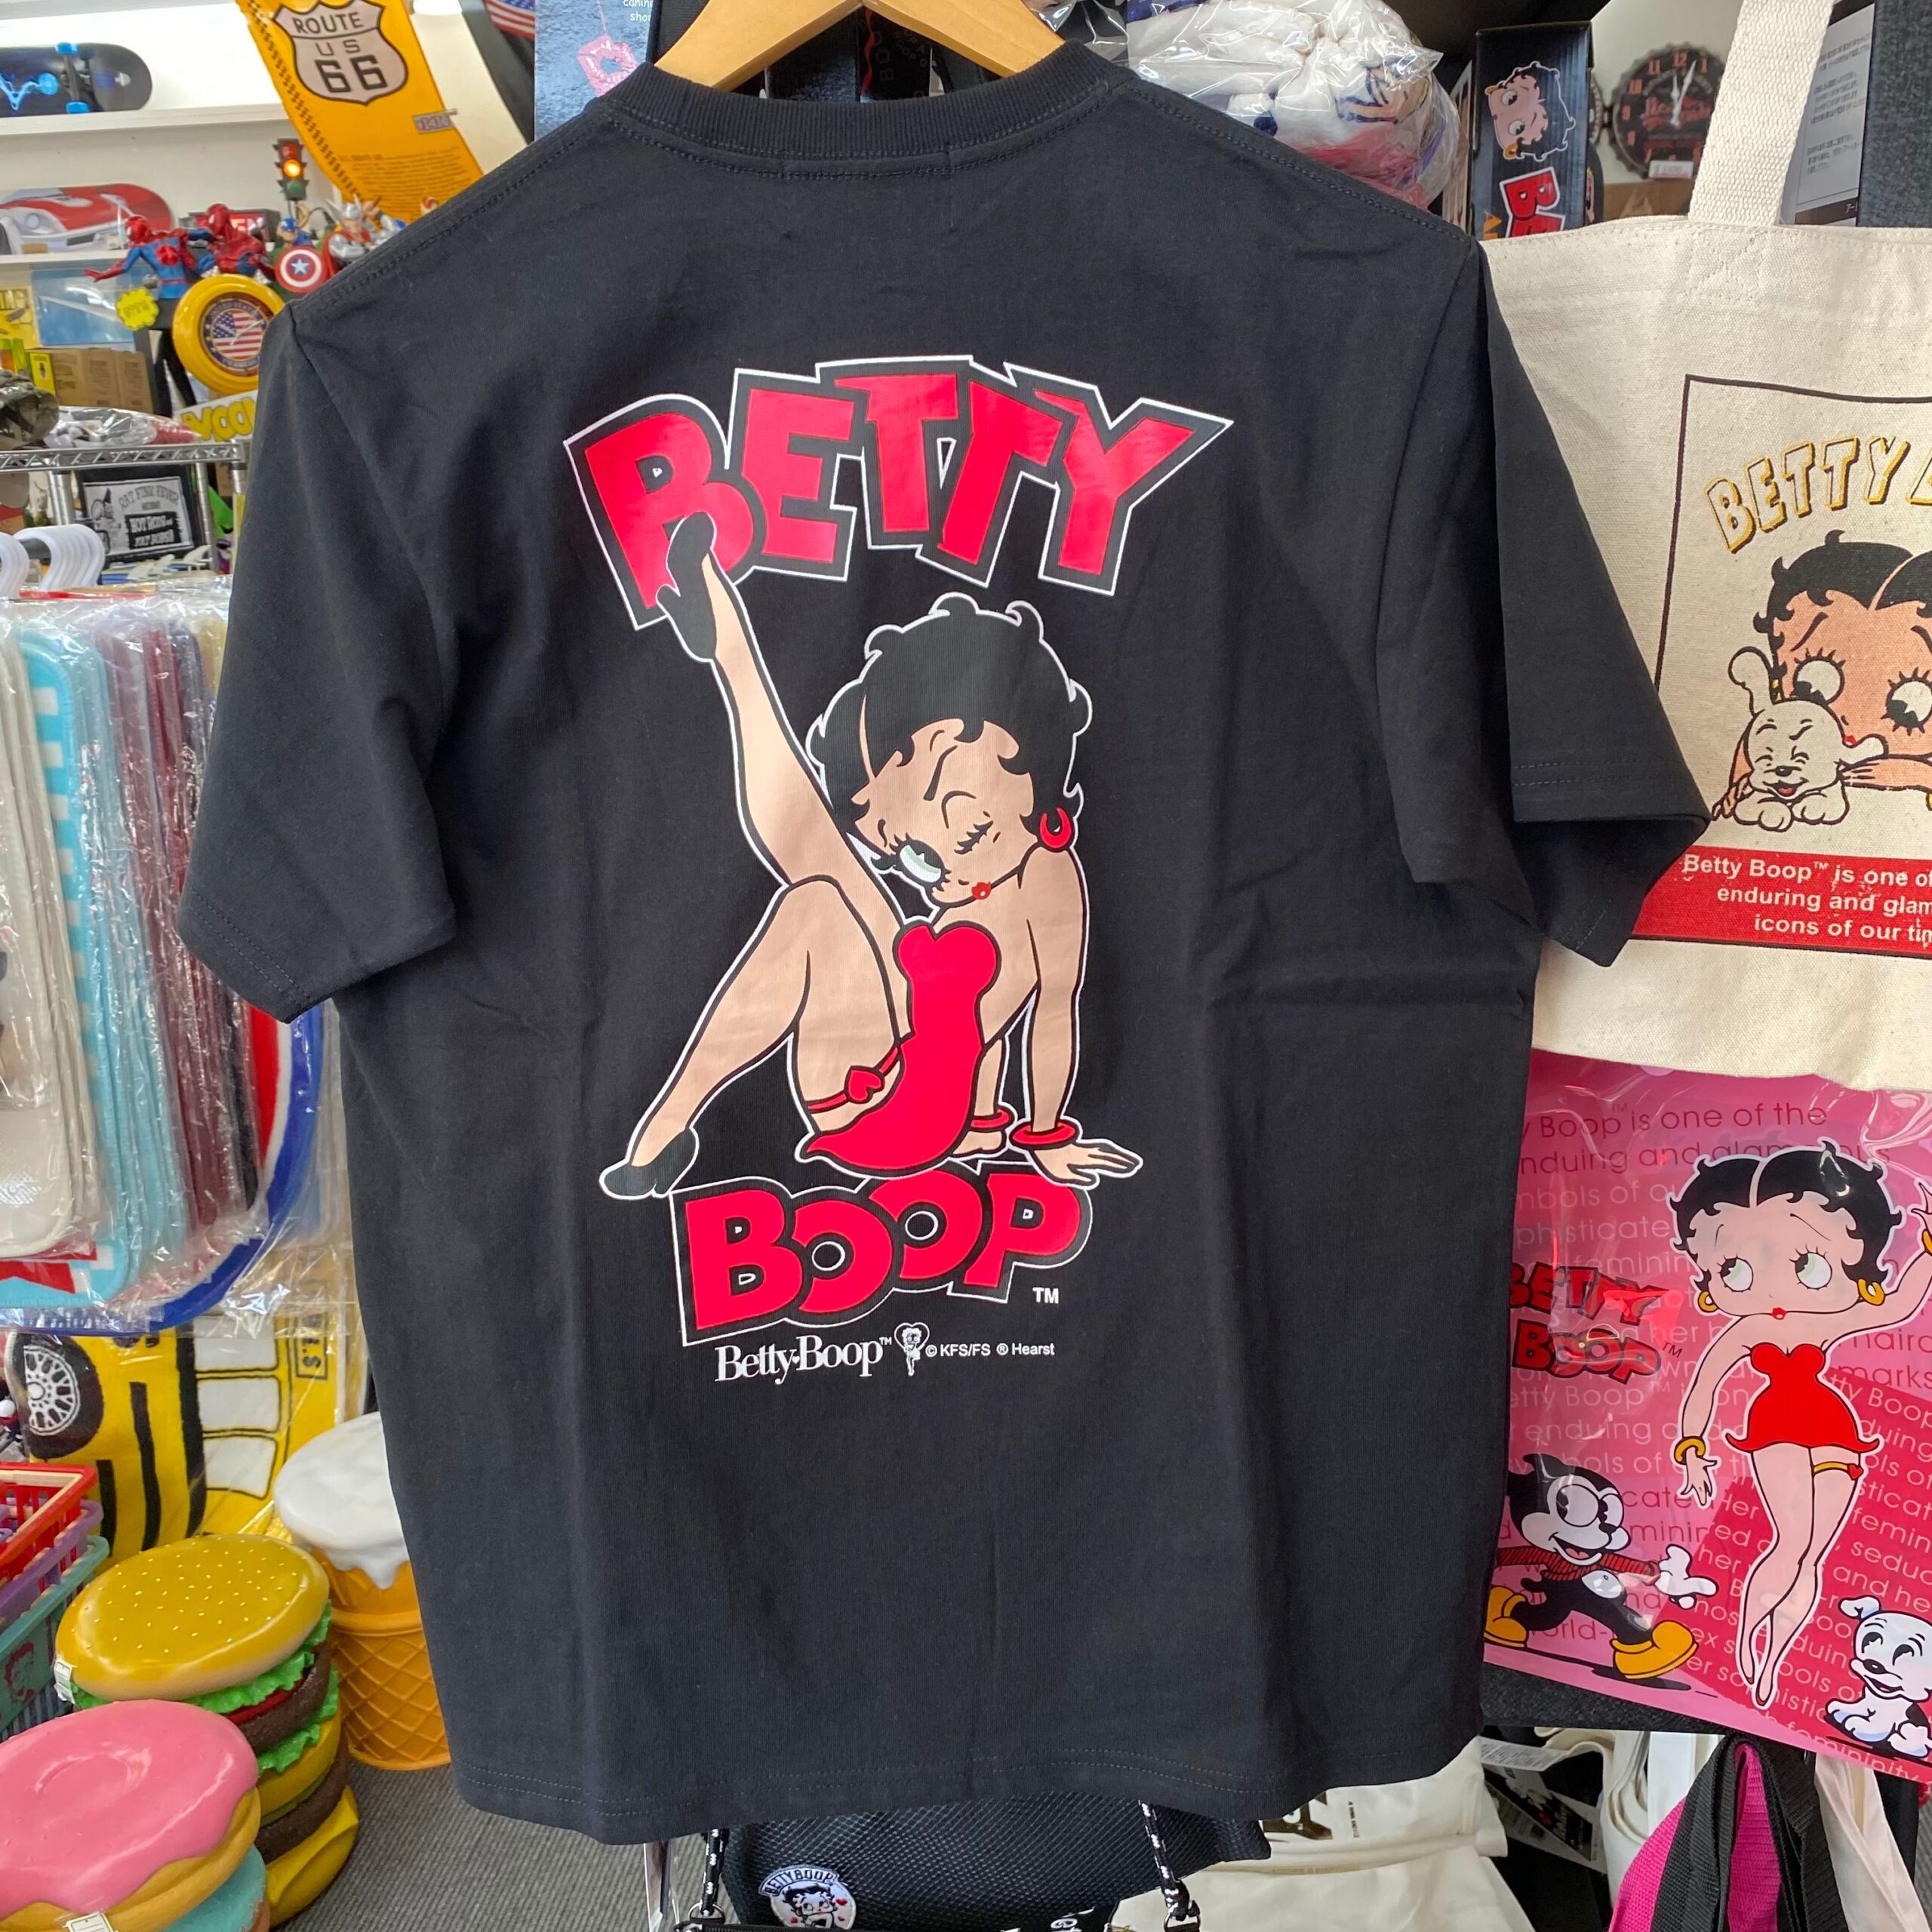 【BETTY BOOP】 「Leg Up Betty 」ネオンカラープリントTシャツ - EIGHT | アパレル・雑貨・自動車用品から